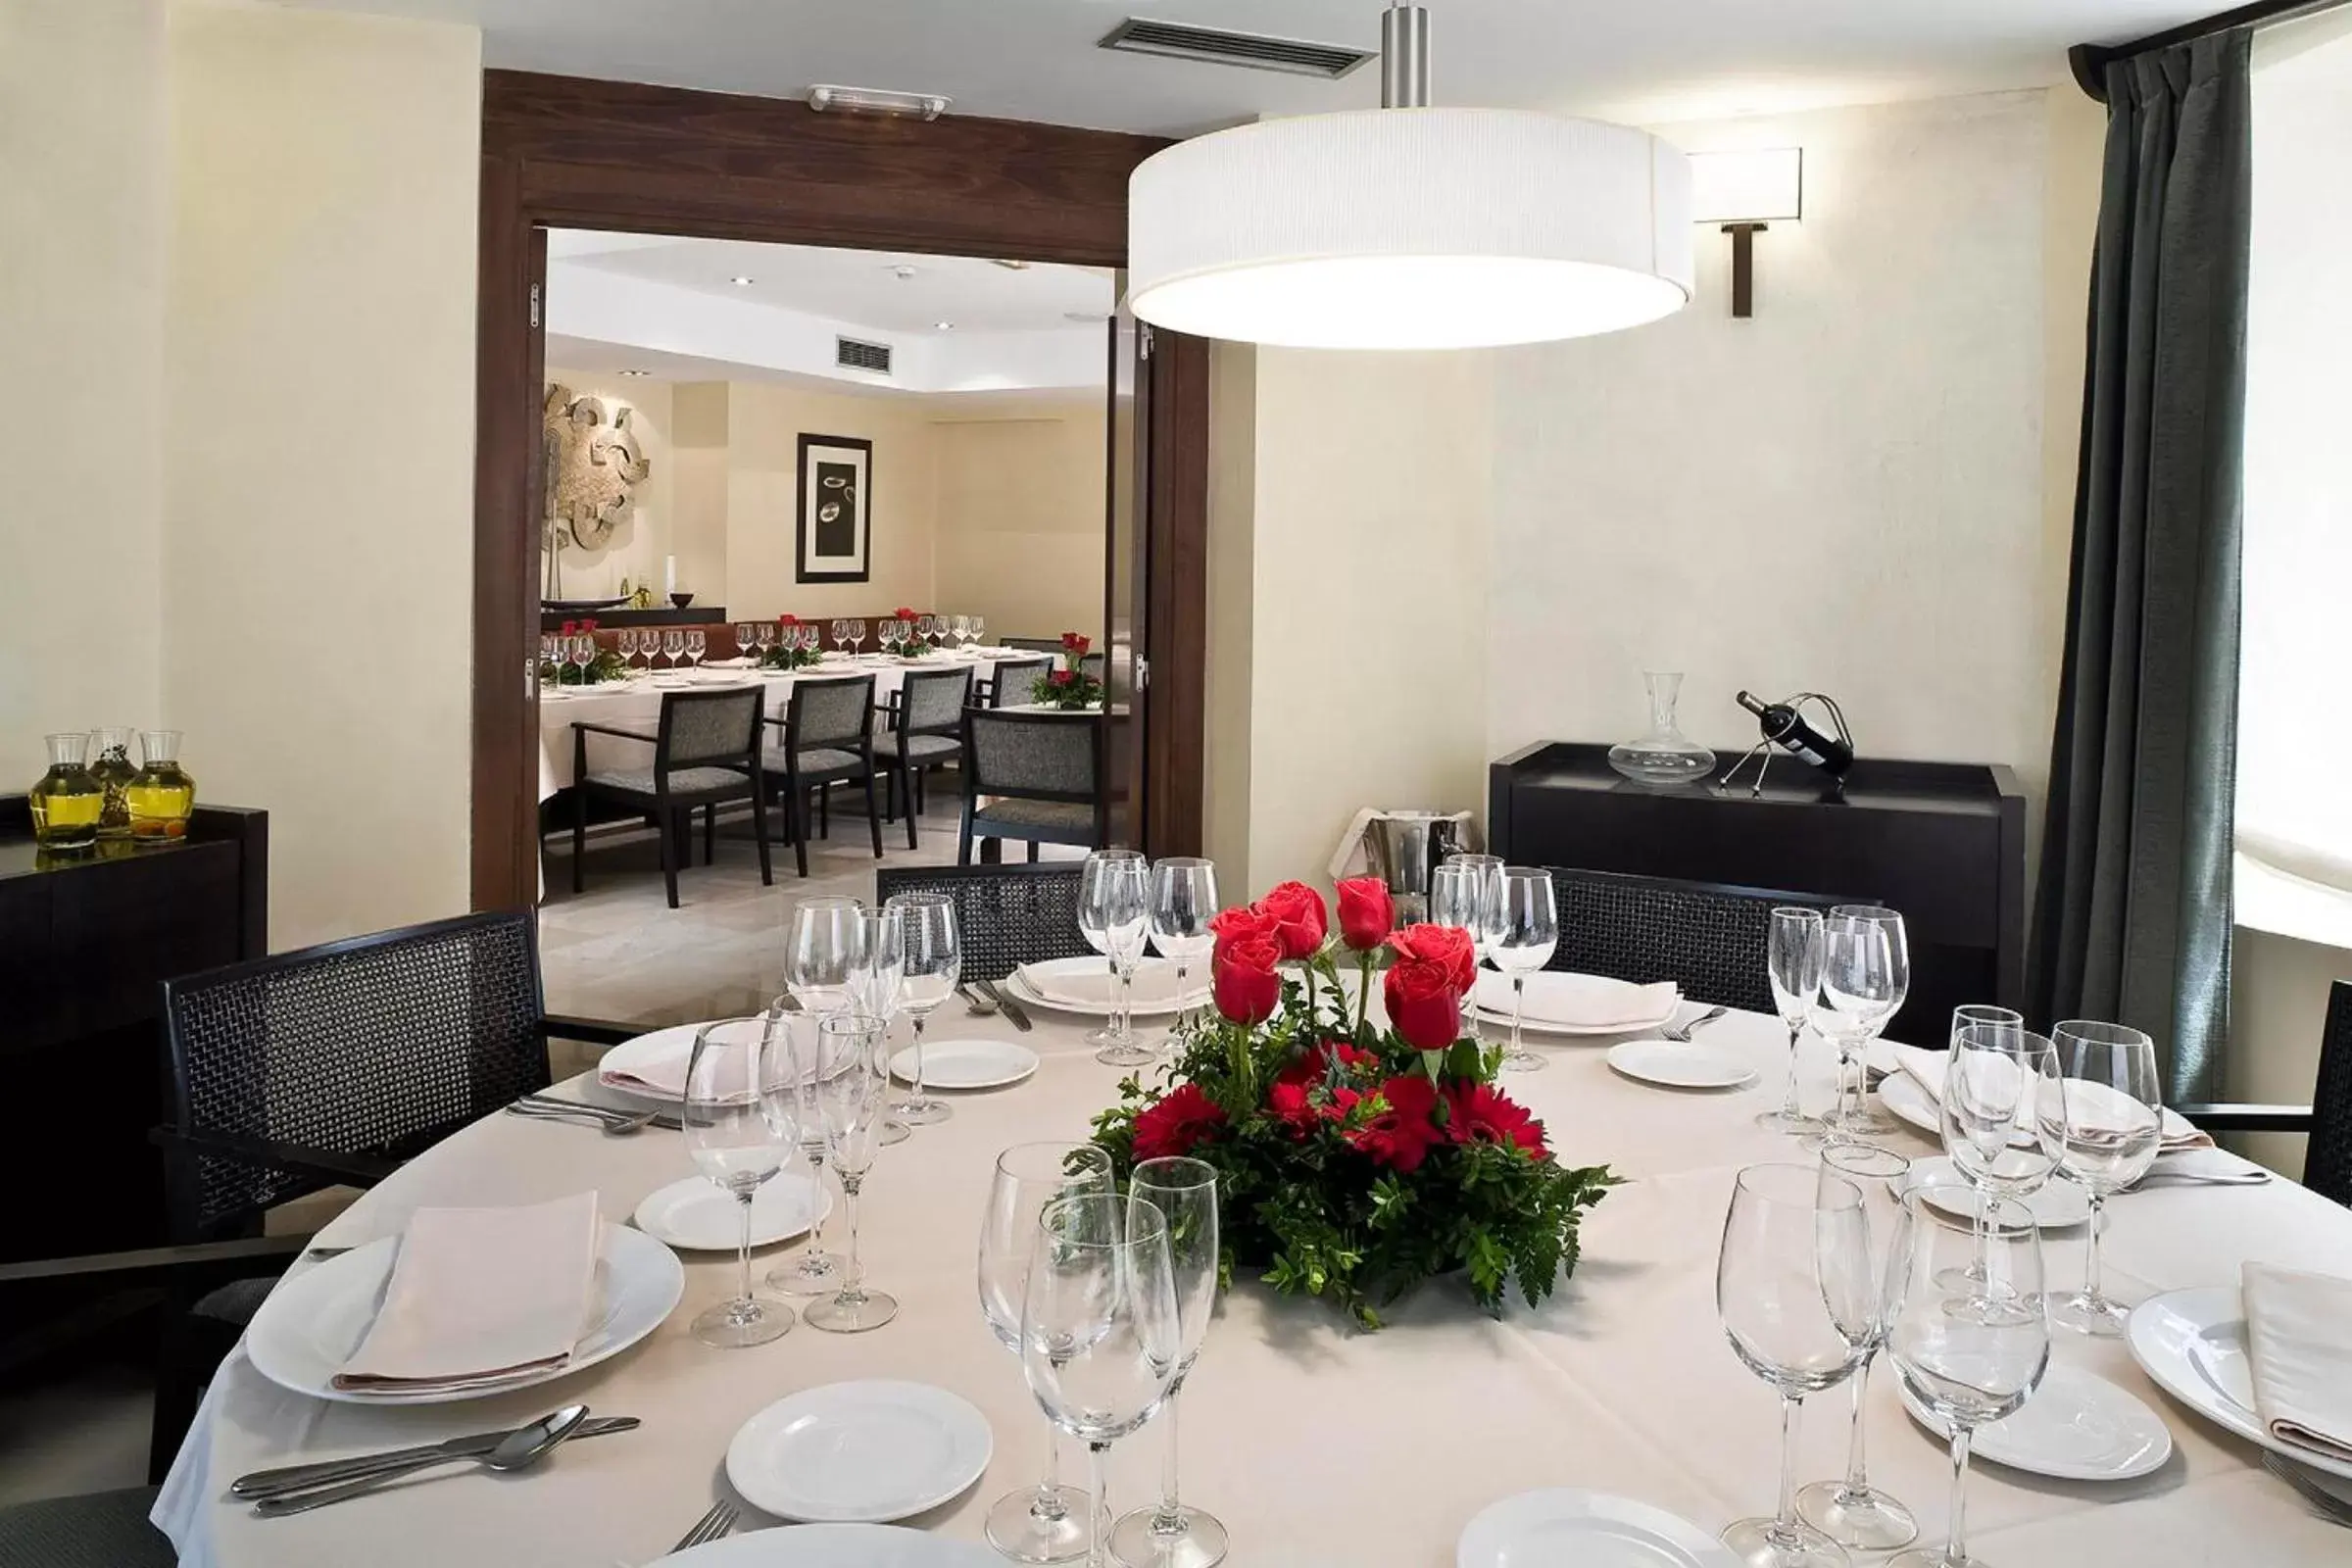 Banquet/Function facilities, Restaurant/Places to Eat in Hotel URH Palacio de Oriol